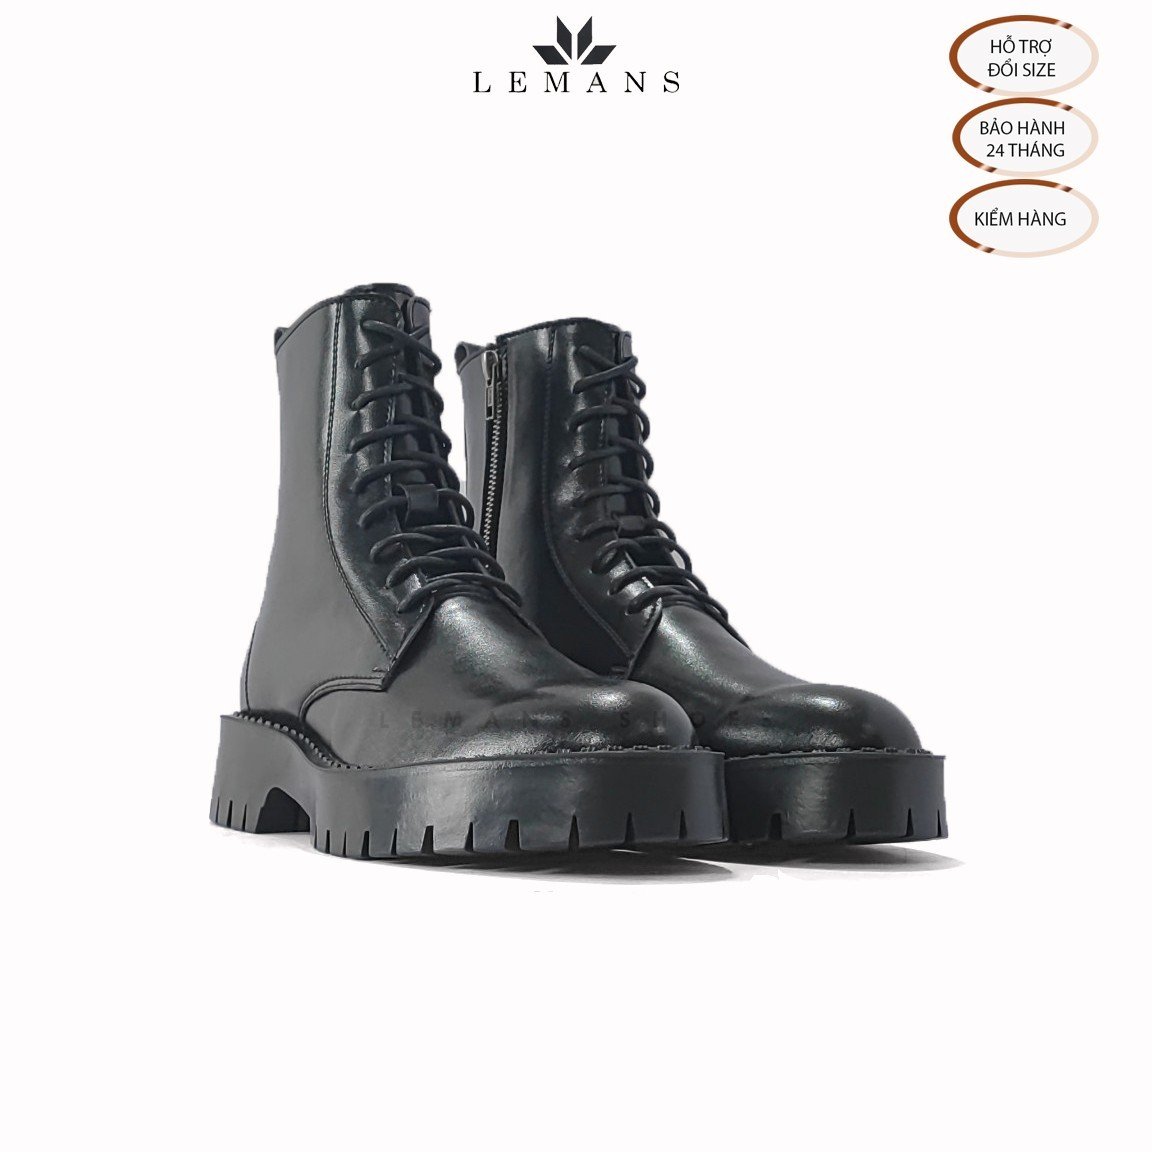 Giày da bò Chunky COMBAT Boots LEMANS nam - Đế Chunky cao 4.5cm - Khóa YKK - Bảo hành 24 tháng - Da Bò - 42